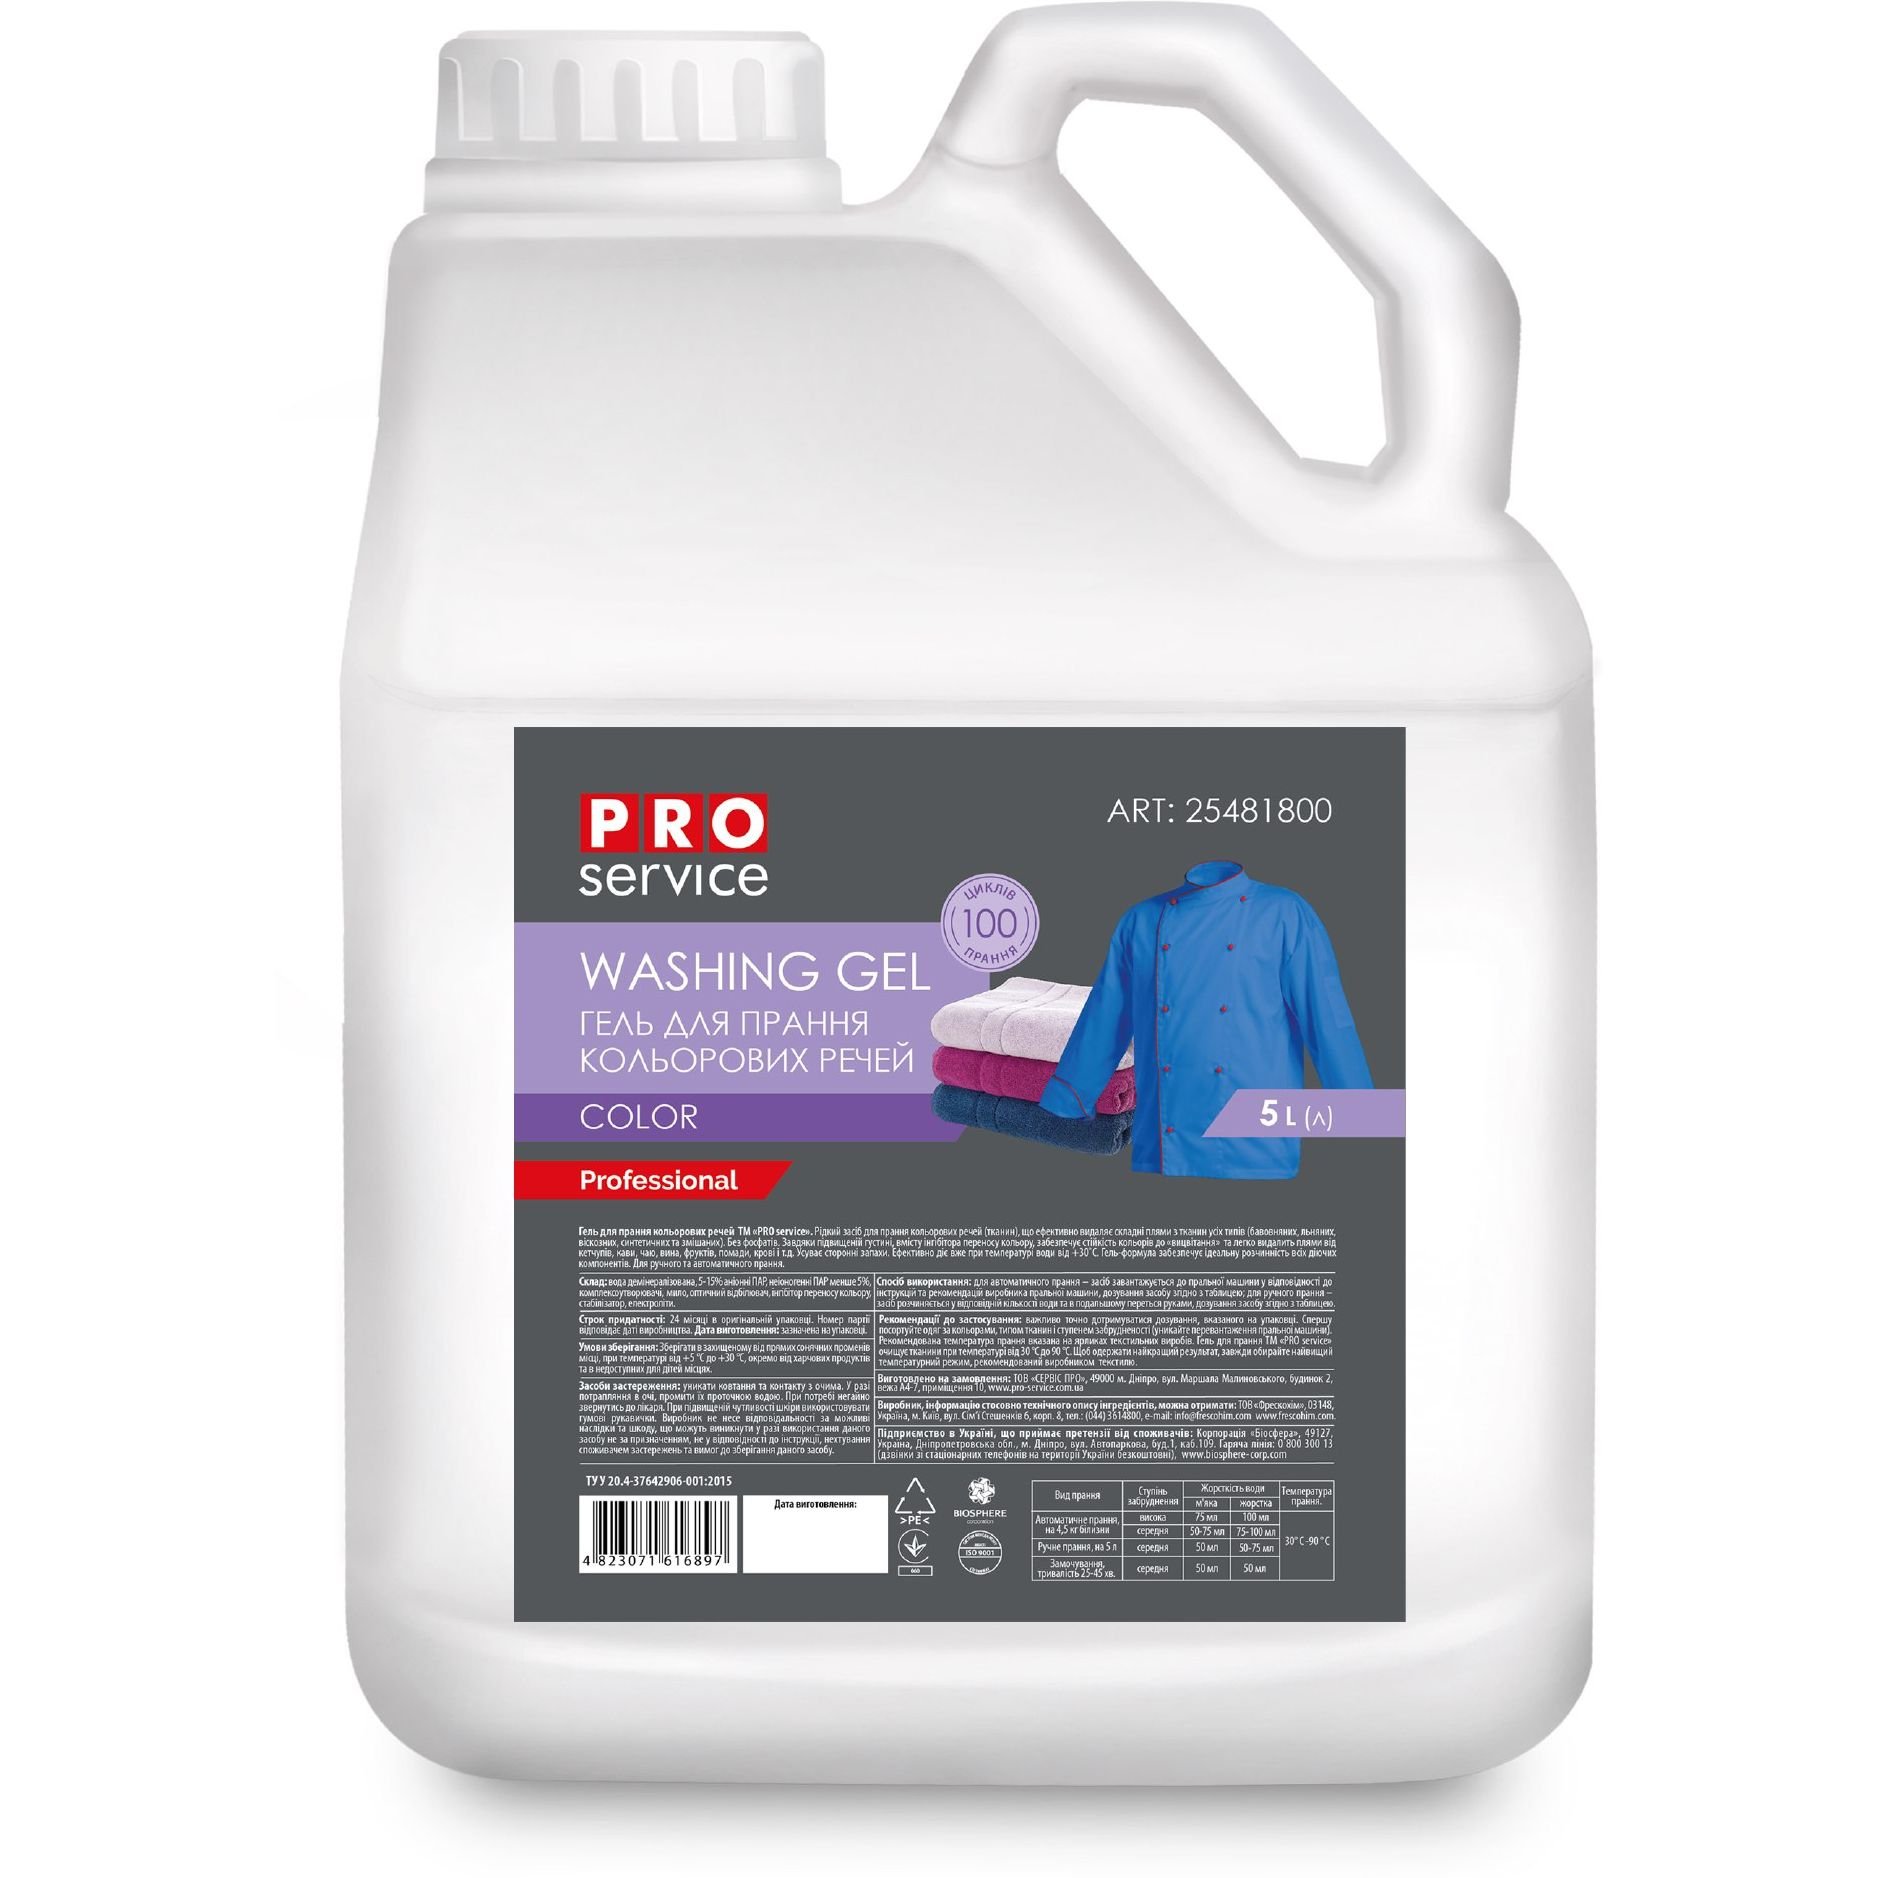 Гель для прання PRO service Color, для кольорових тканин, 5 л (25481800) - фото 1